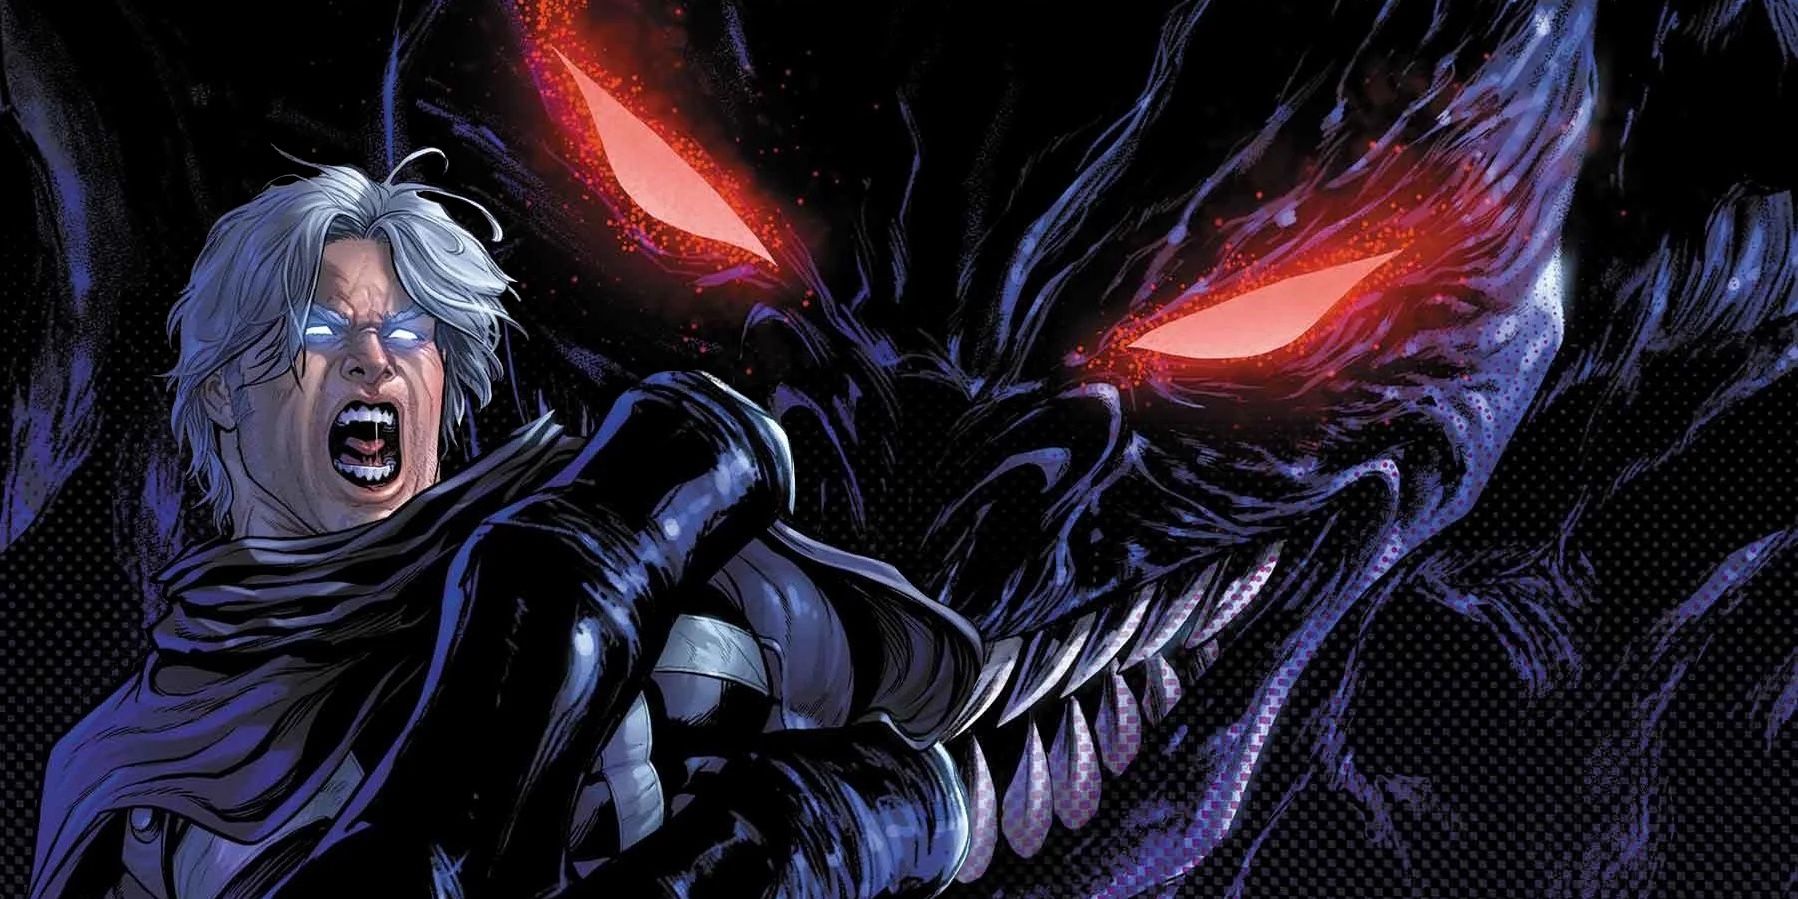 "Un rey de las sombras": X-Men acaba de crear un nuevo e impactante nombre en clave e identidad para Magneto